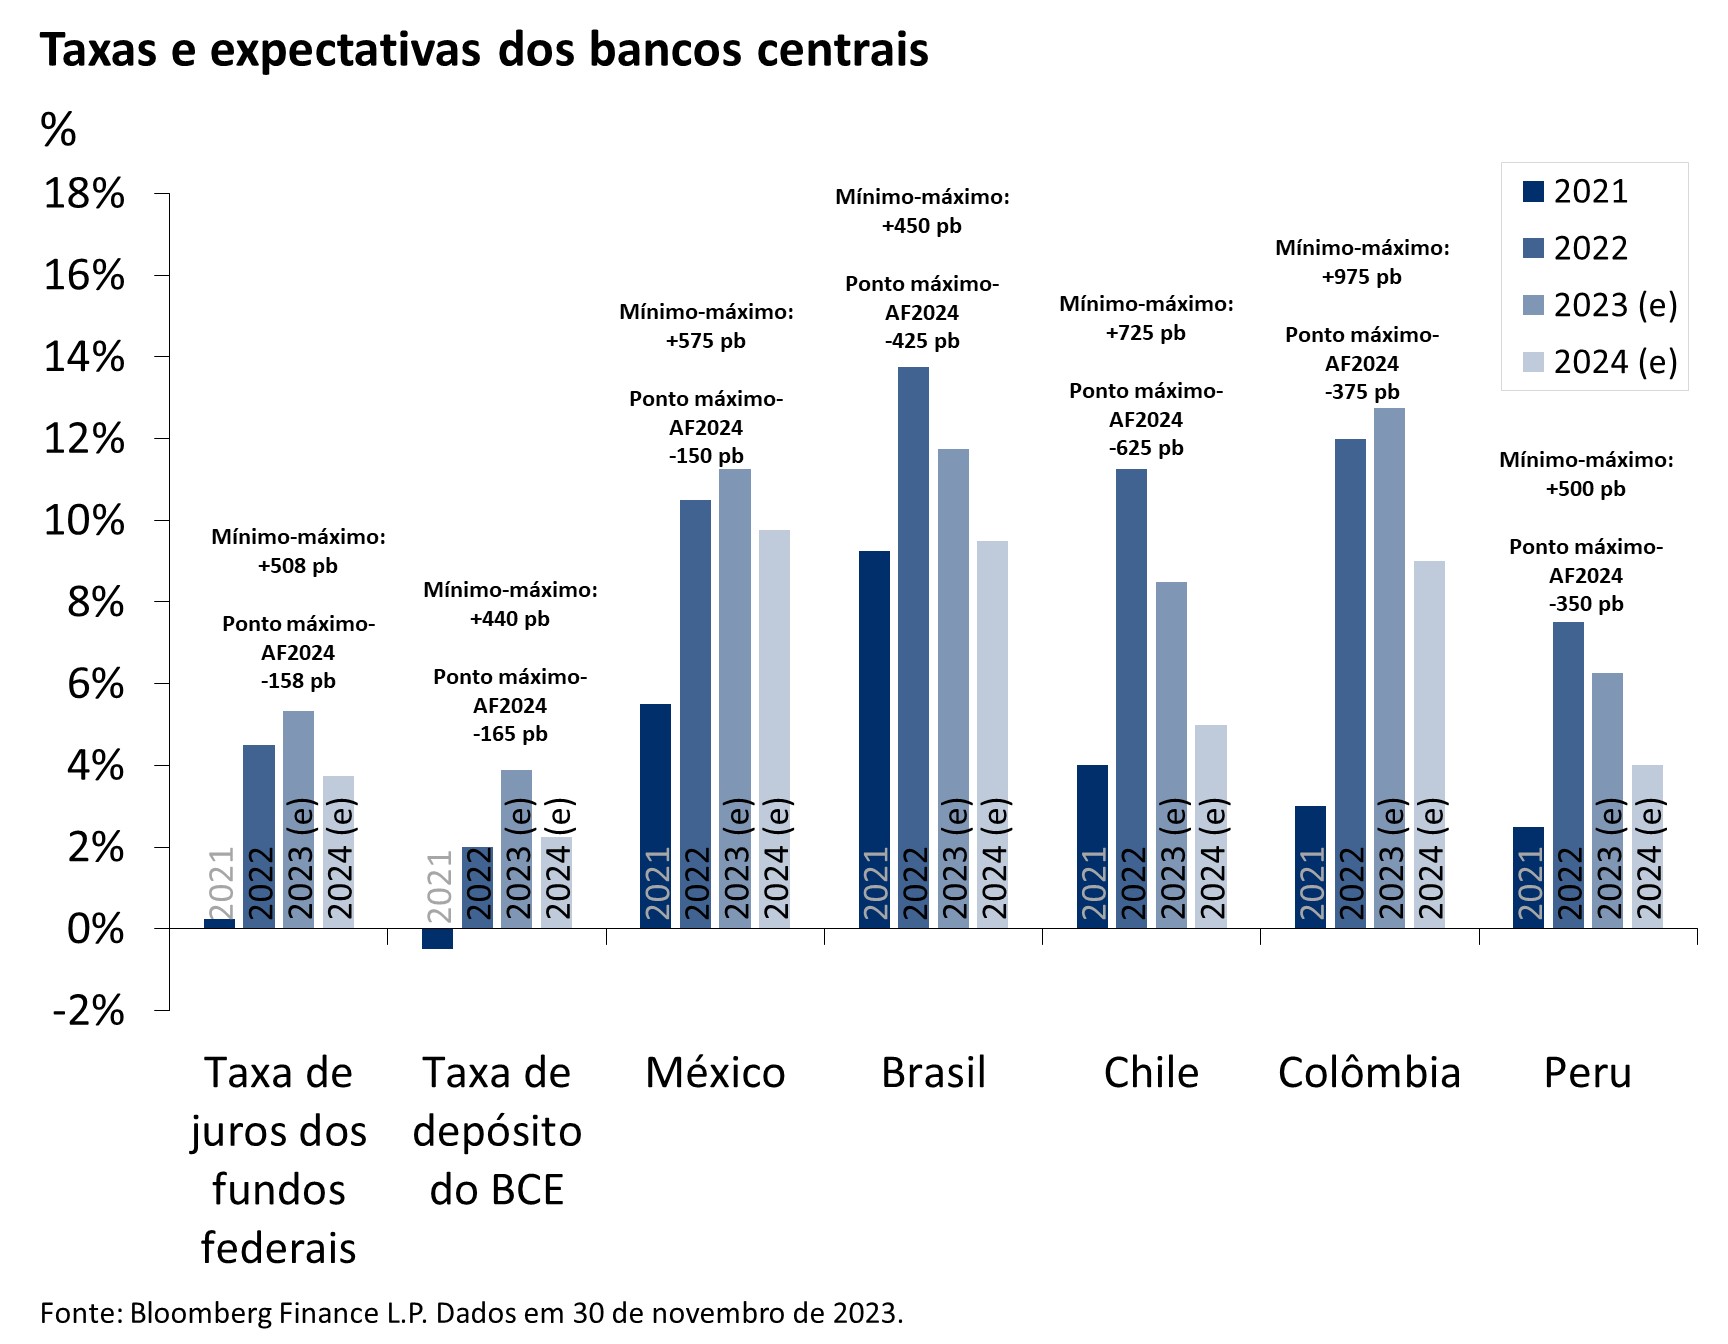 Gráfico de taxas de juros dos bancos centrais dos EUA, BCE, México, Brasil, Chile, Colômbia e Peru, de 2021 a 2024 (estimado).